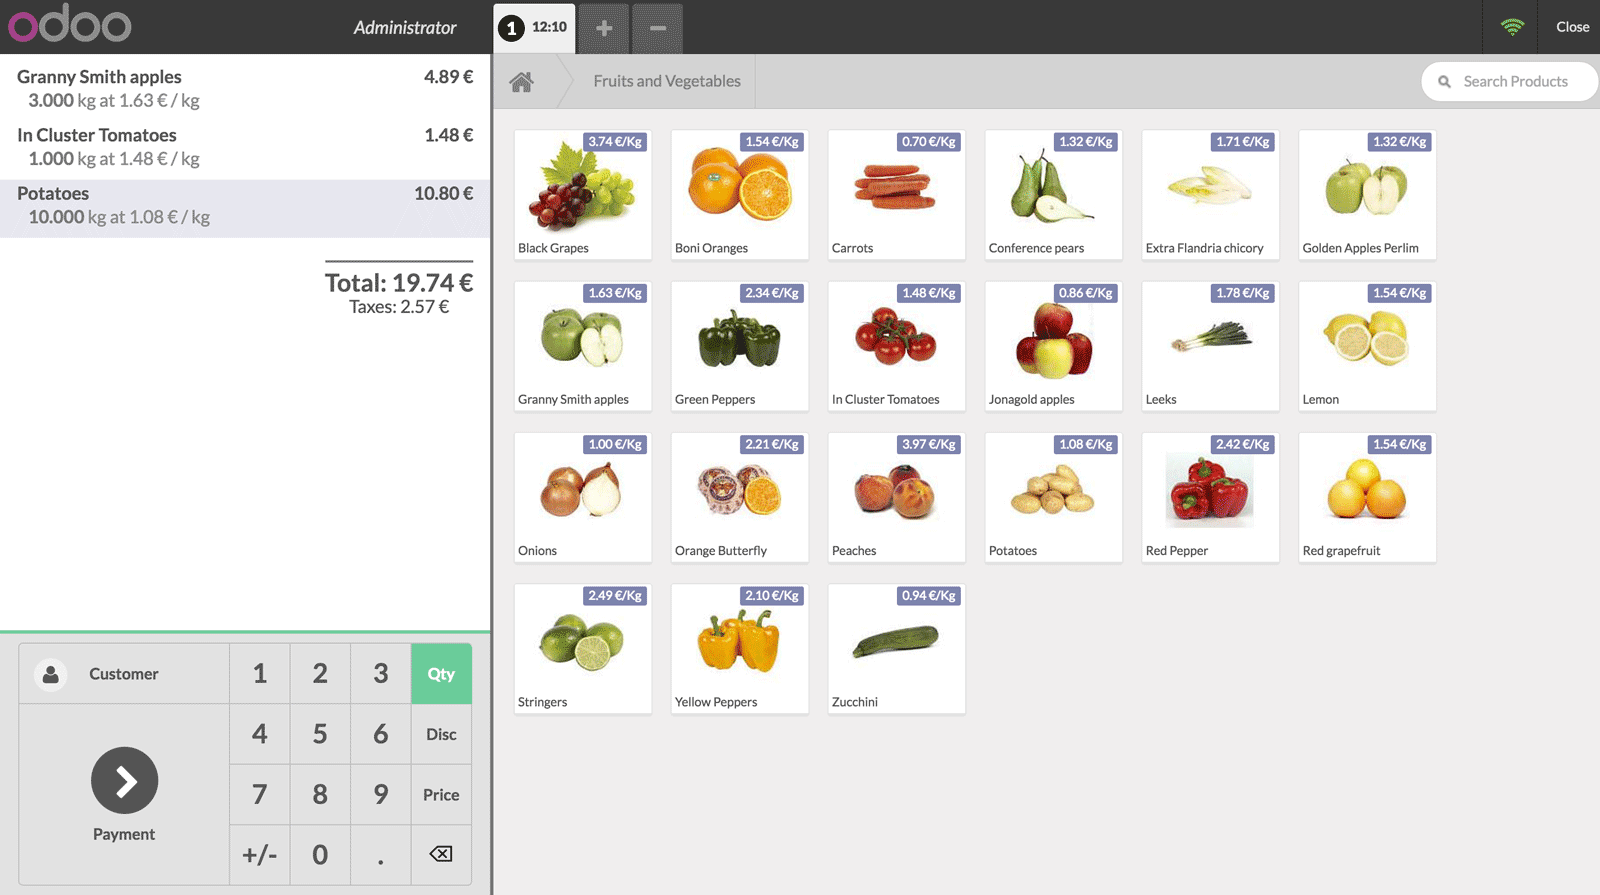 Punto de Venta de Odoo - Interfaz de caja registradora que muestra una lista de frutas y verduras